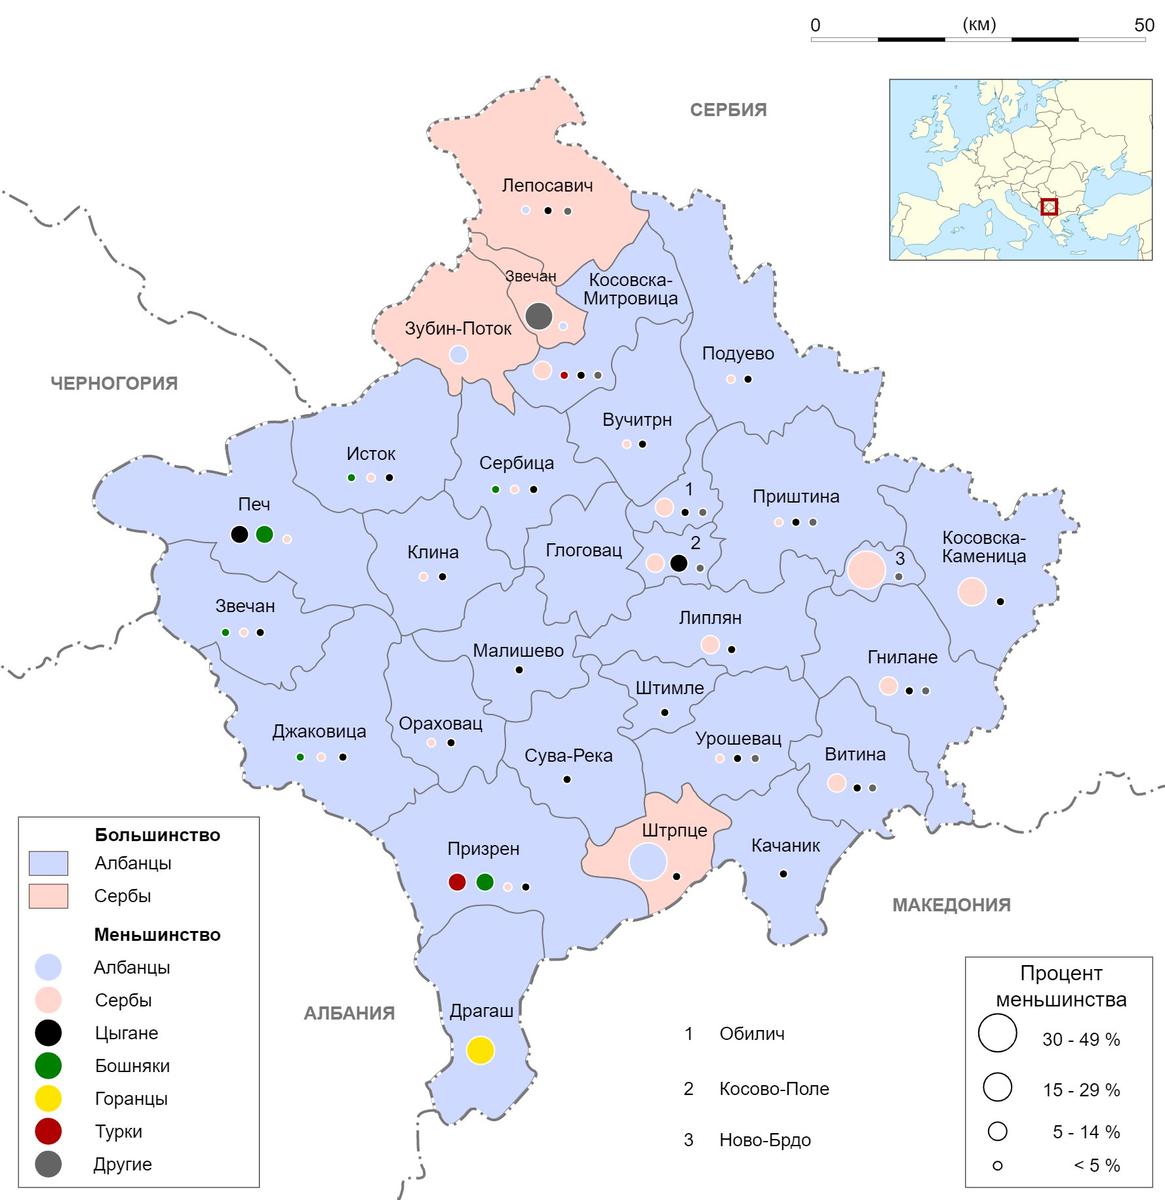 Этническая карта Косова. Источник: Wikimedia